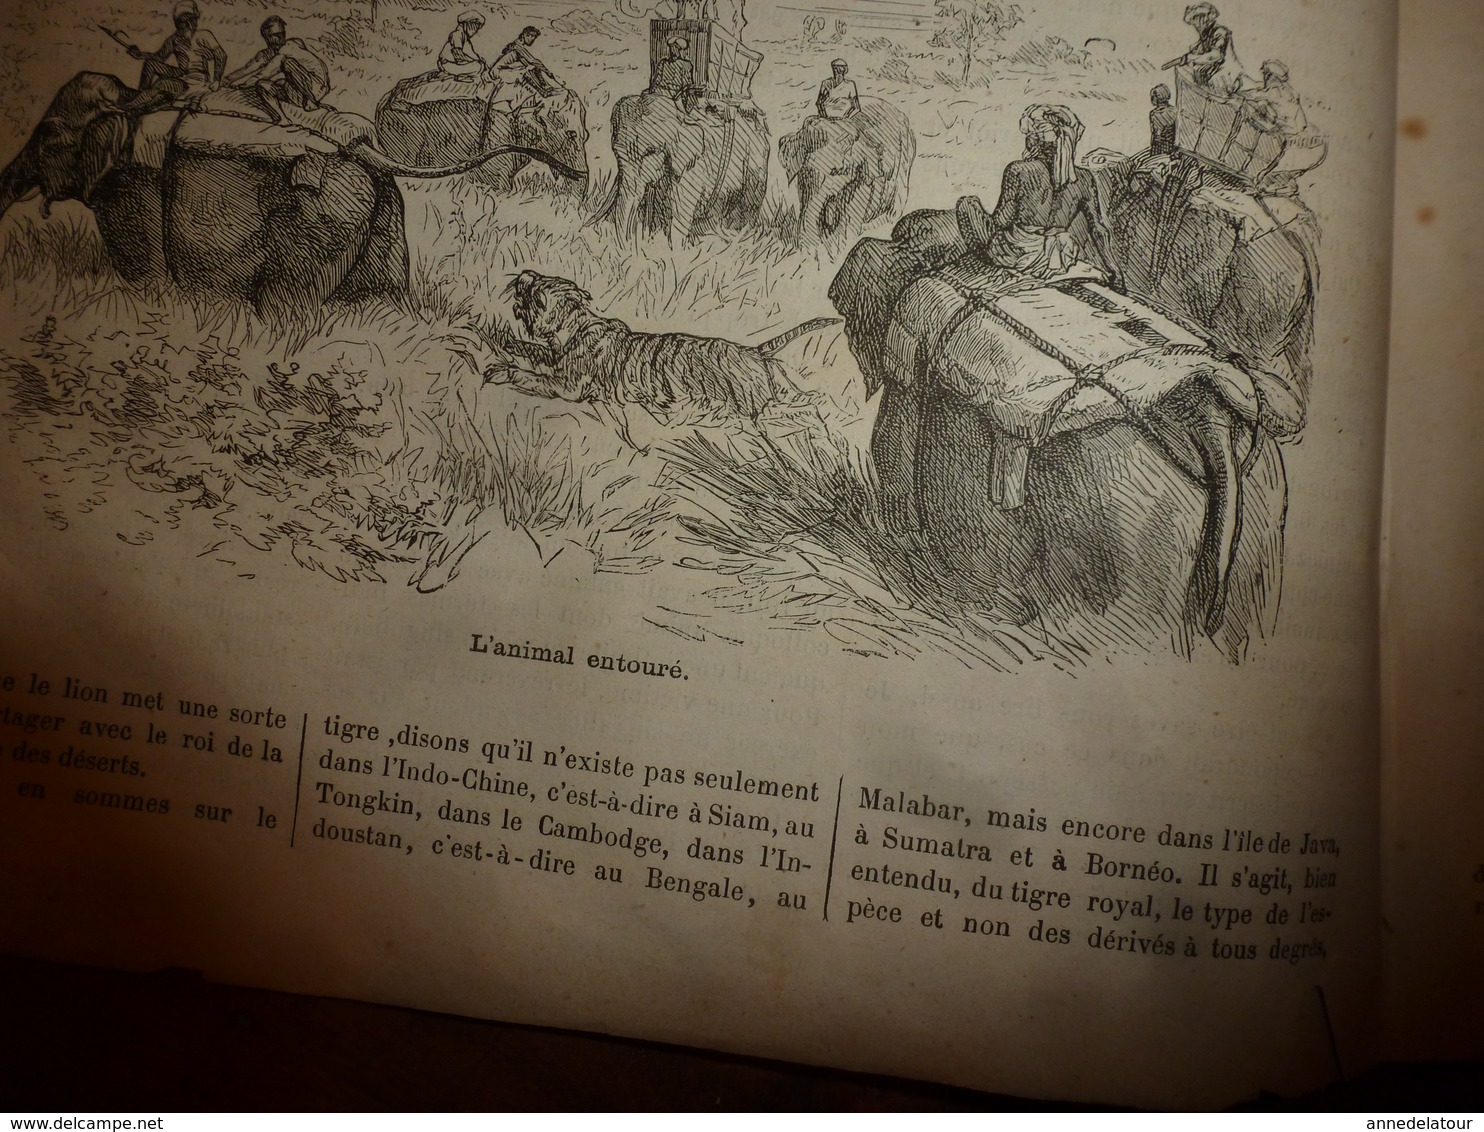 1883 JdV : Jeu du ririki aux îles Fidji; Chasse au tigre en Inde et Indochine;etc  (document en très mauvais état)